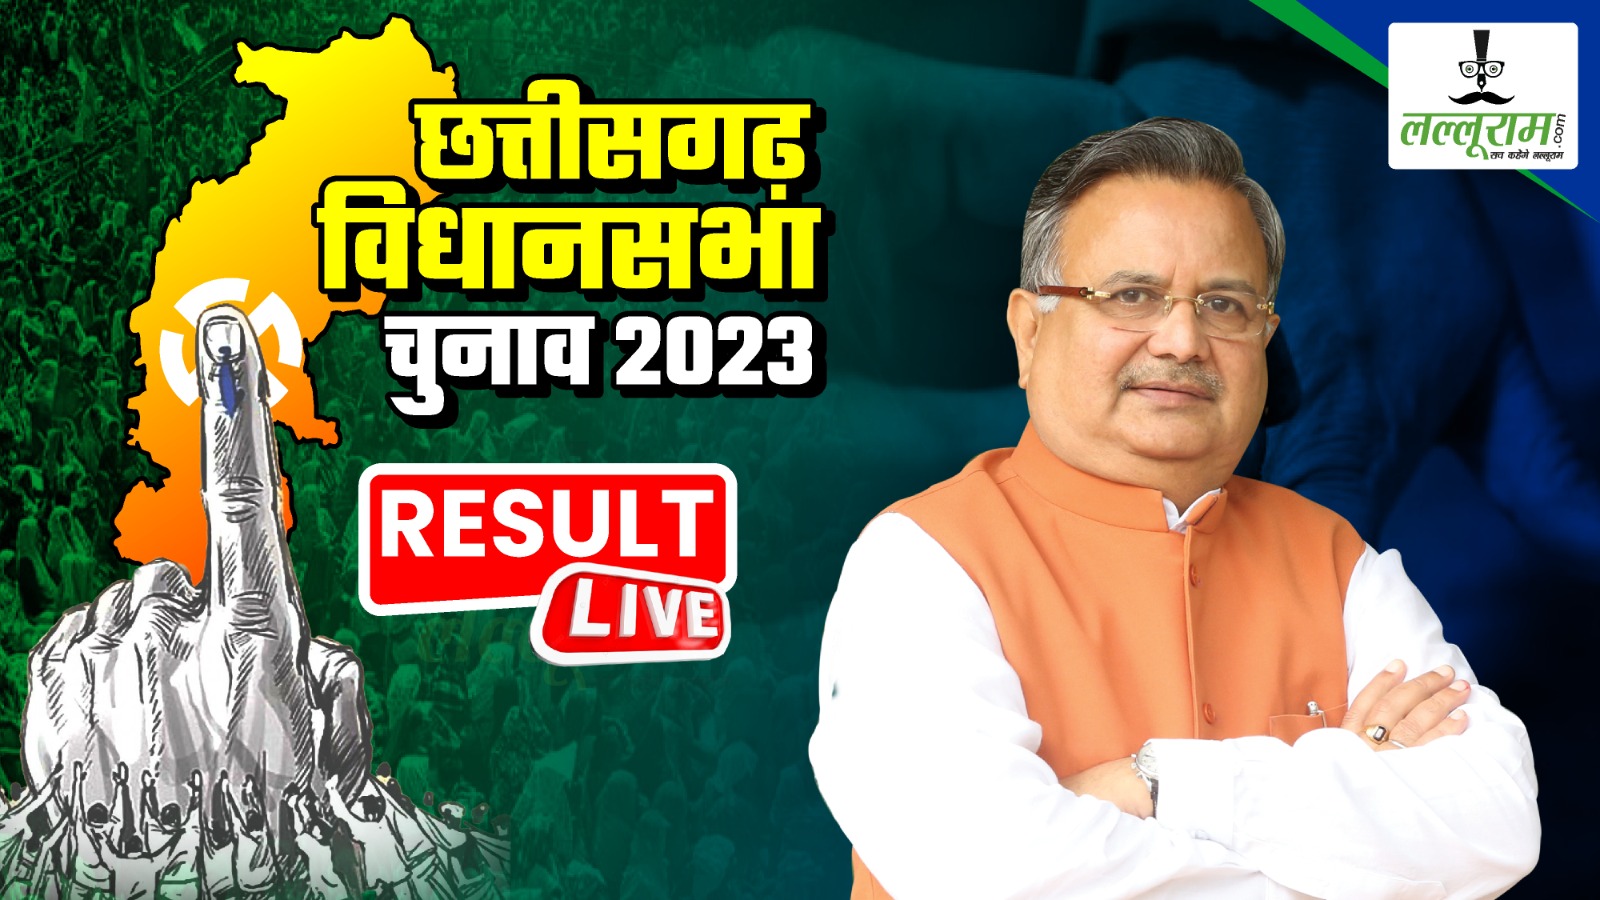 Chhattisgarh election results 2023: रमन सिंह का ठोका दावा, कहा- 38 सीटों पर सिमट जाएगी कांग्रेस, राज्य में बन रही डबल इंजन की सरकार…